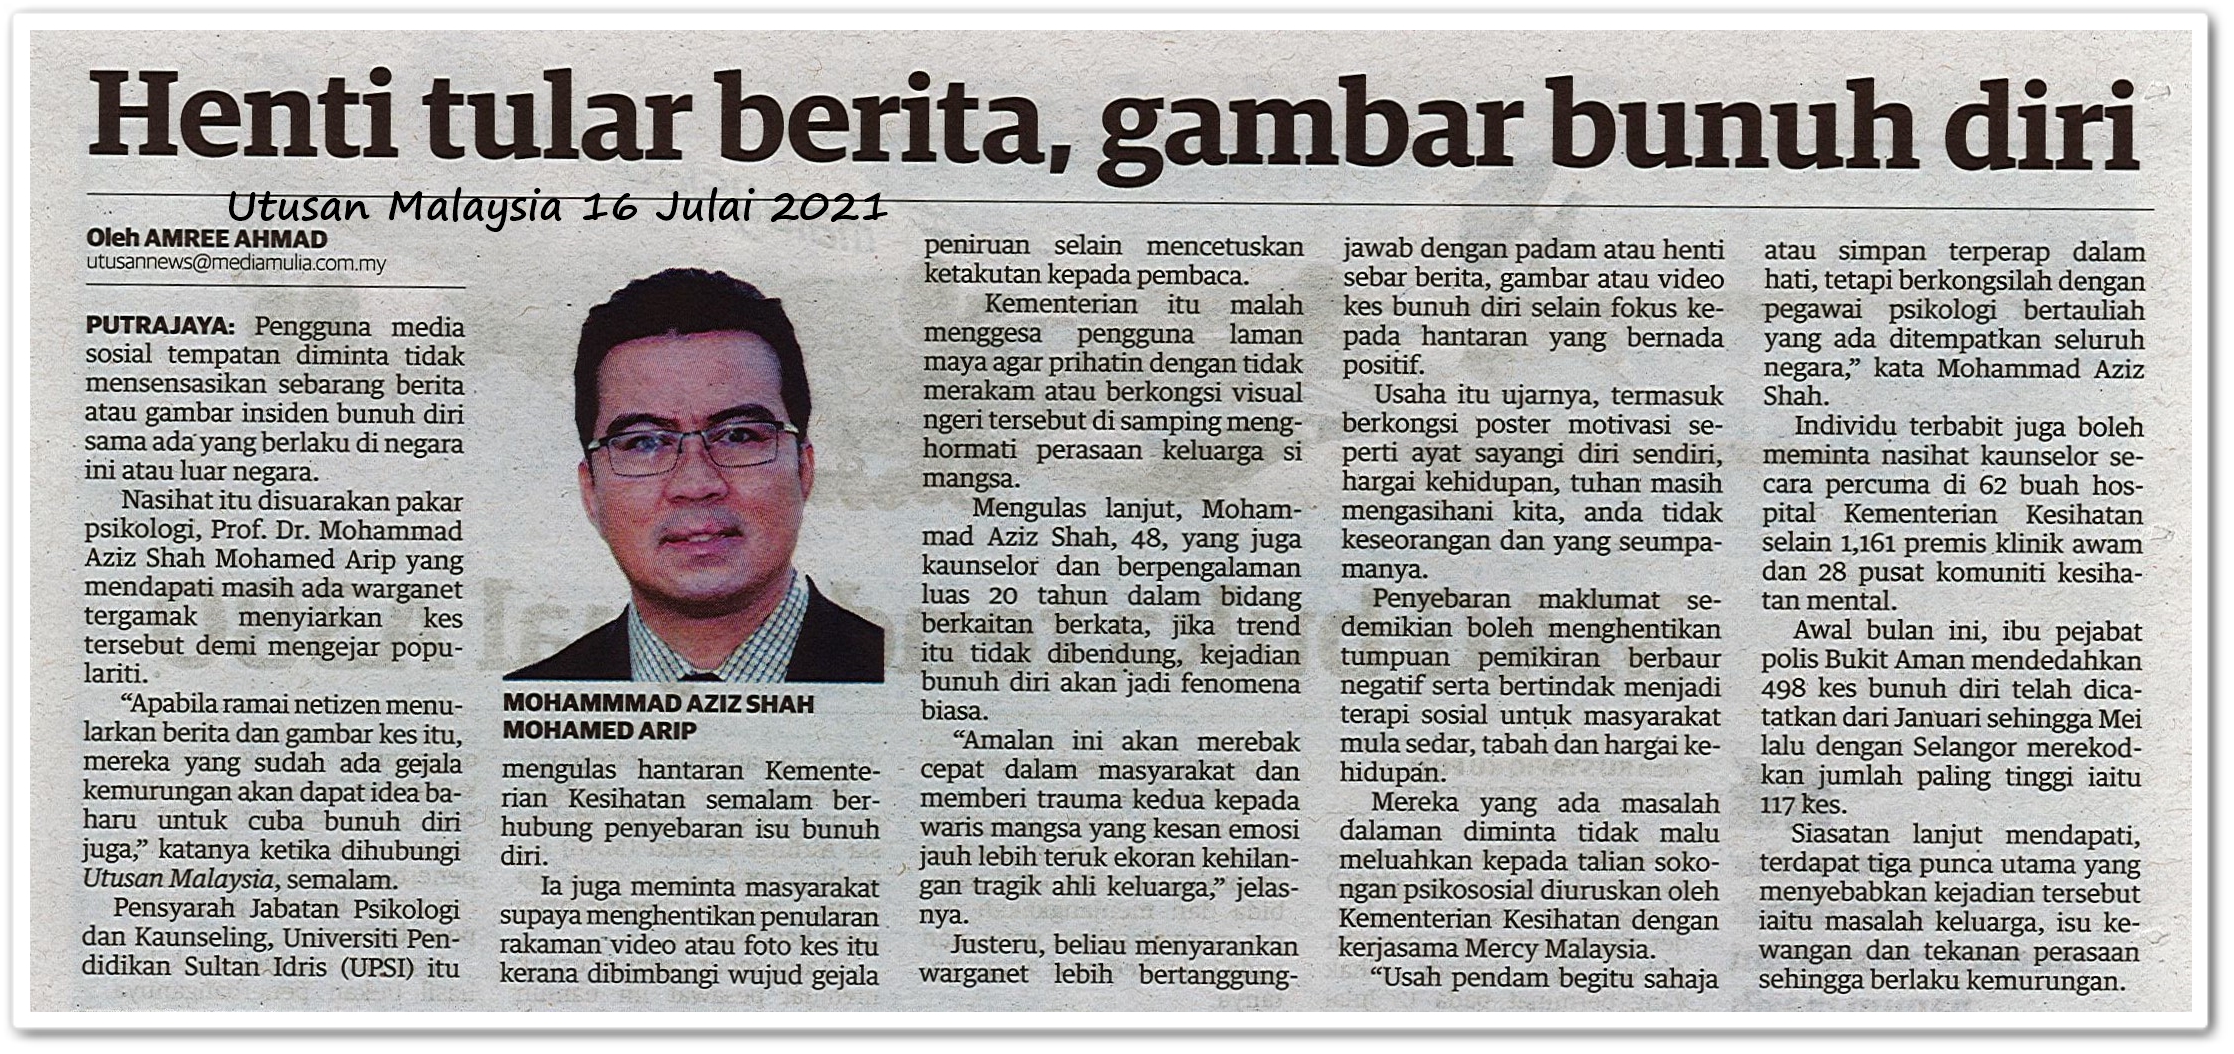 Henti tular berita , gambar bunuh diri - Keratan akhbar Utusan Malaysia 16 Julai 2021